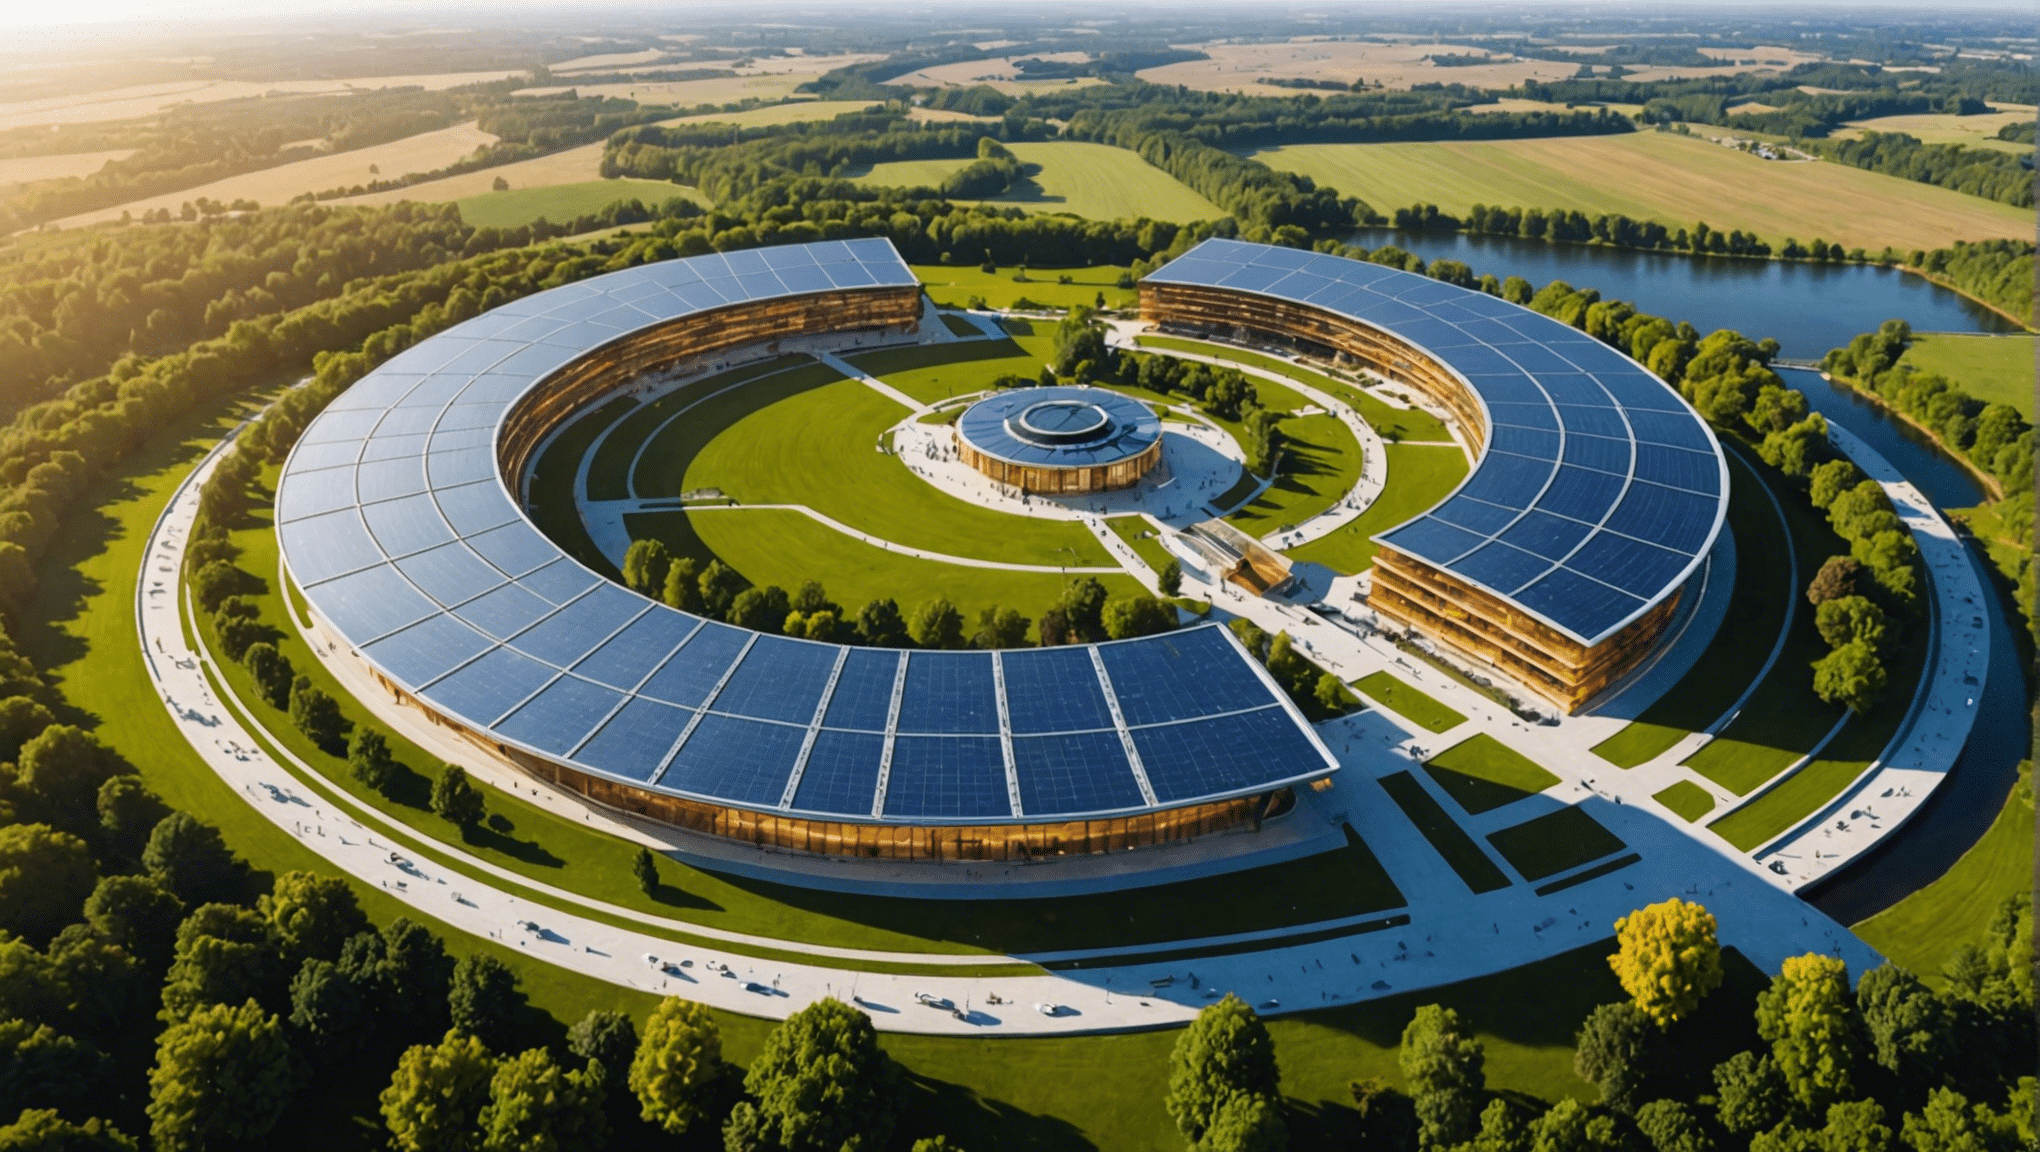 découvrez le plus grand parc solaire d'europe, récemment inauguré en allemagne, symbole de l'engagement pour les énergies renouvelables et l'innovation environnementale.